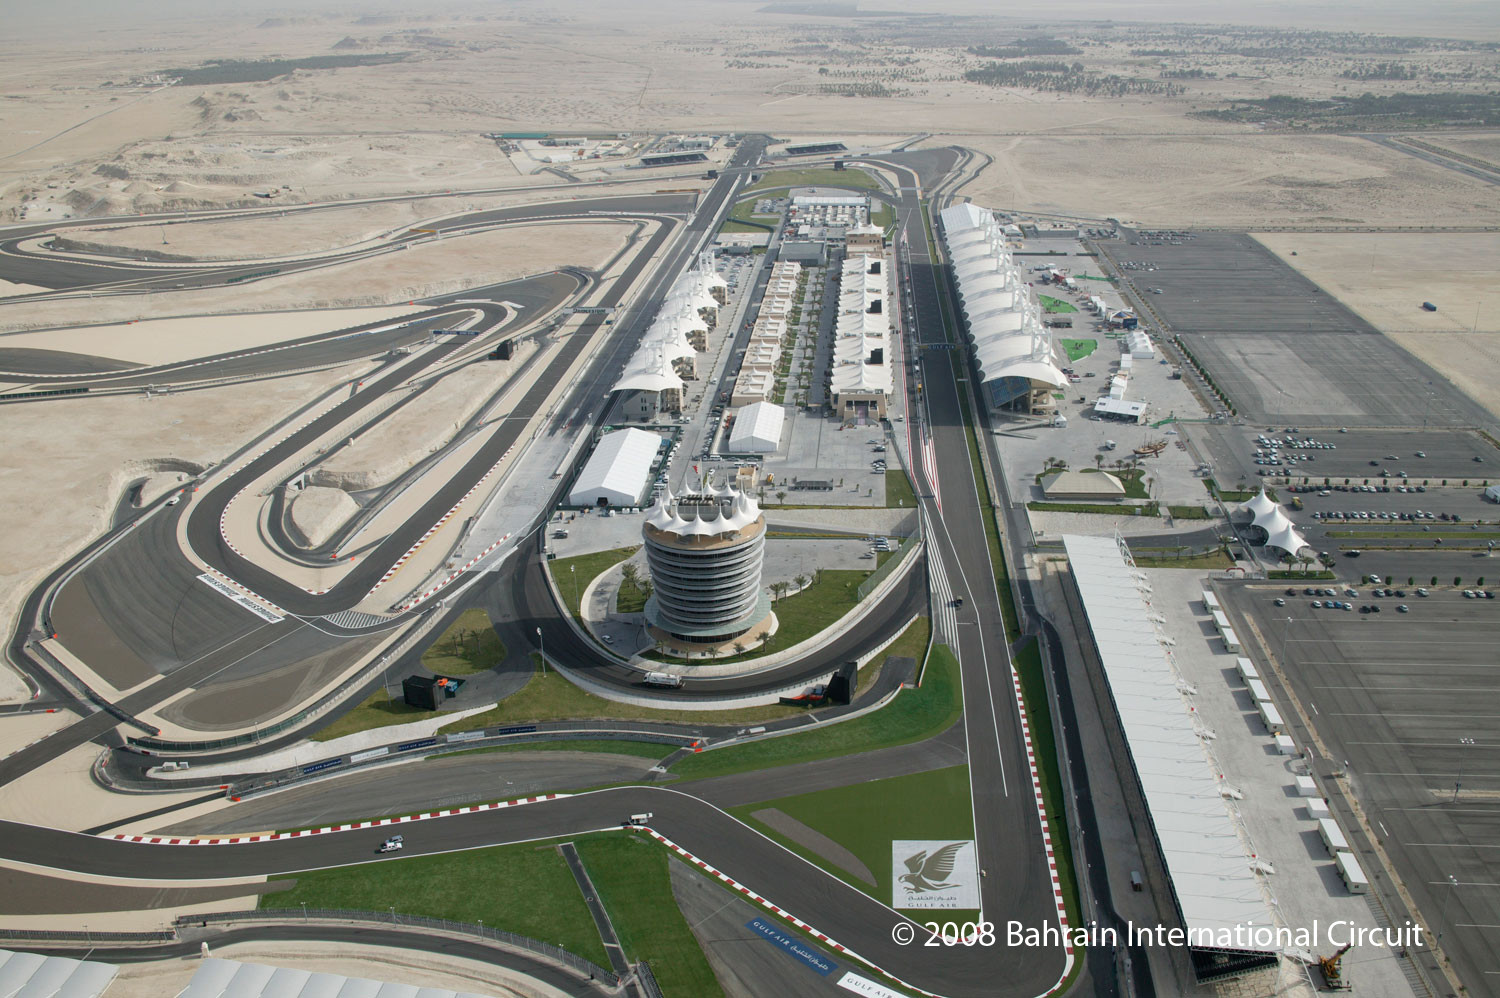 Ματαιώθηκε το Grand Prix του Μπαχρέιν λόγω της πολιτικής αναταραχής